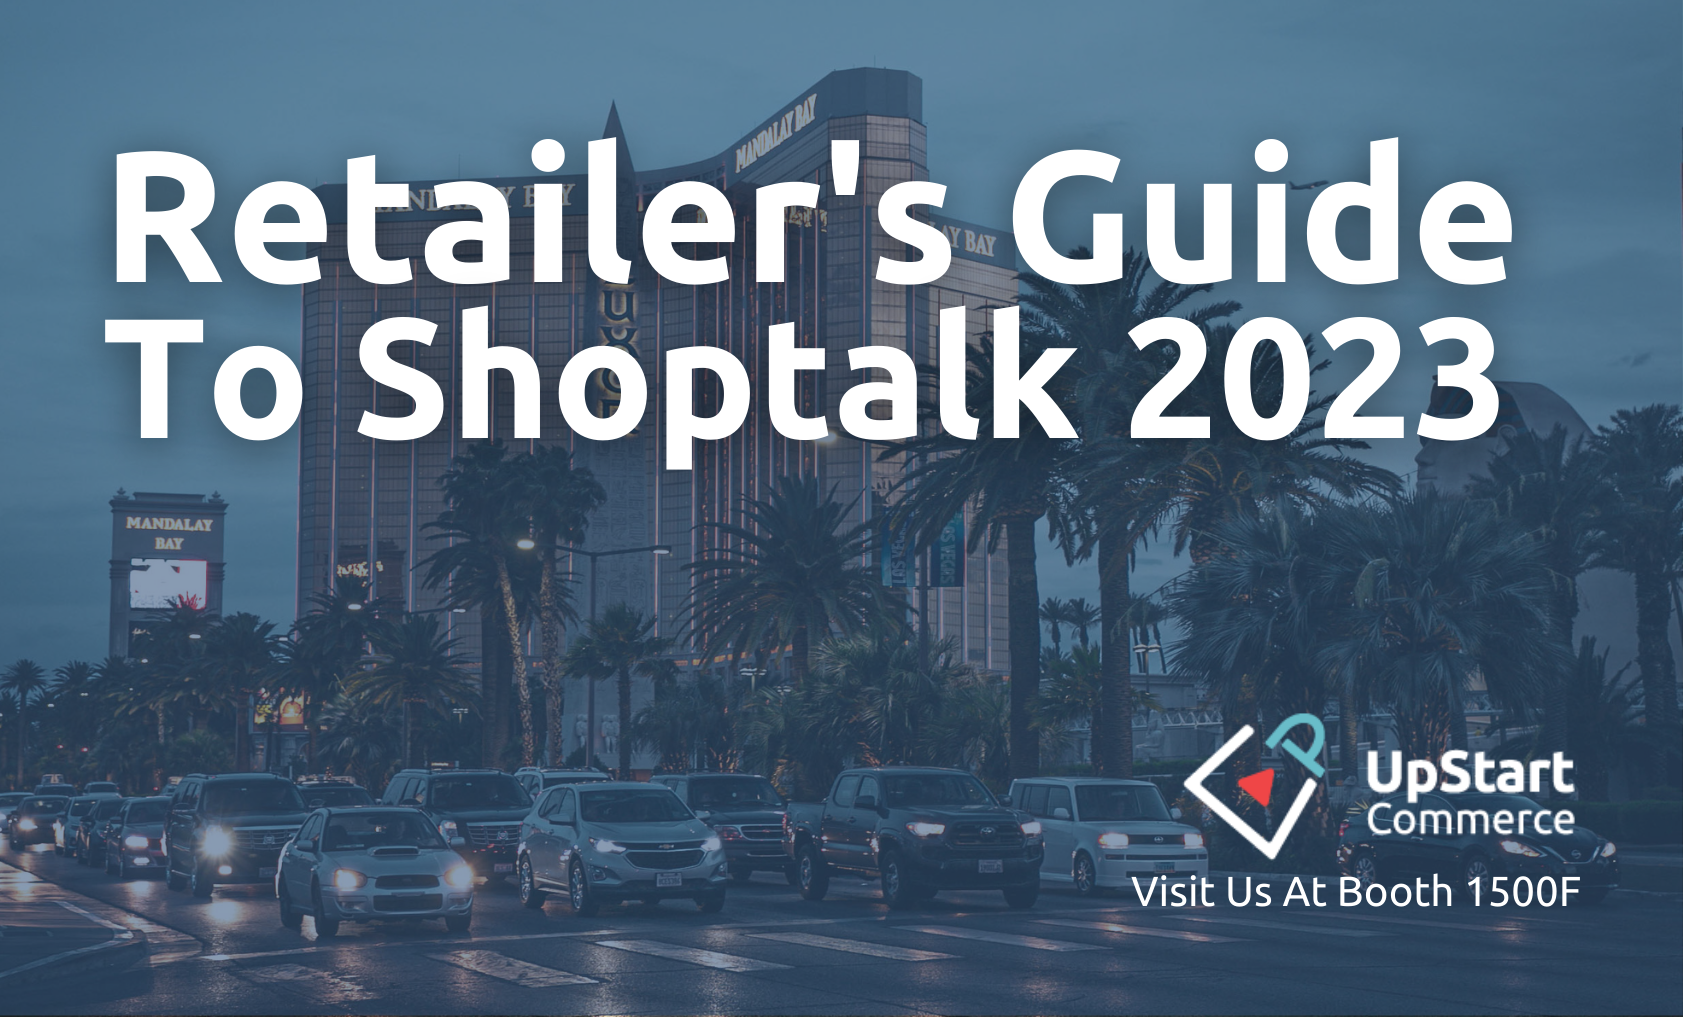 Retailers Guide To Shoptalk 2023 